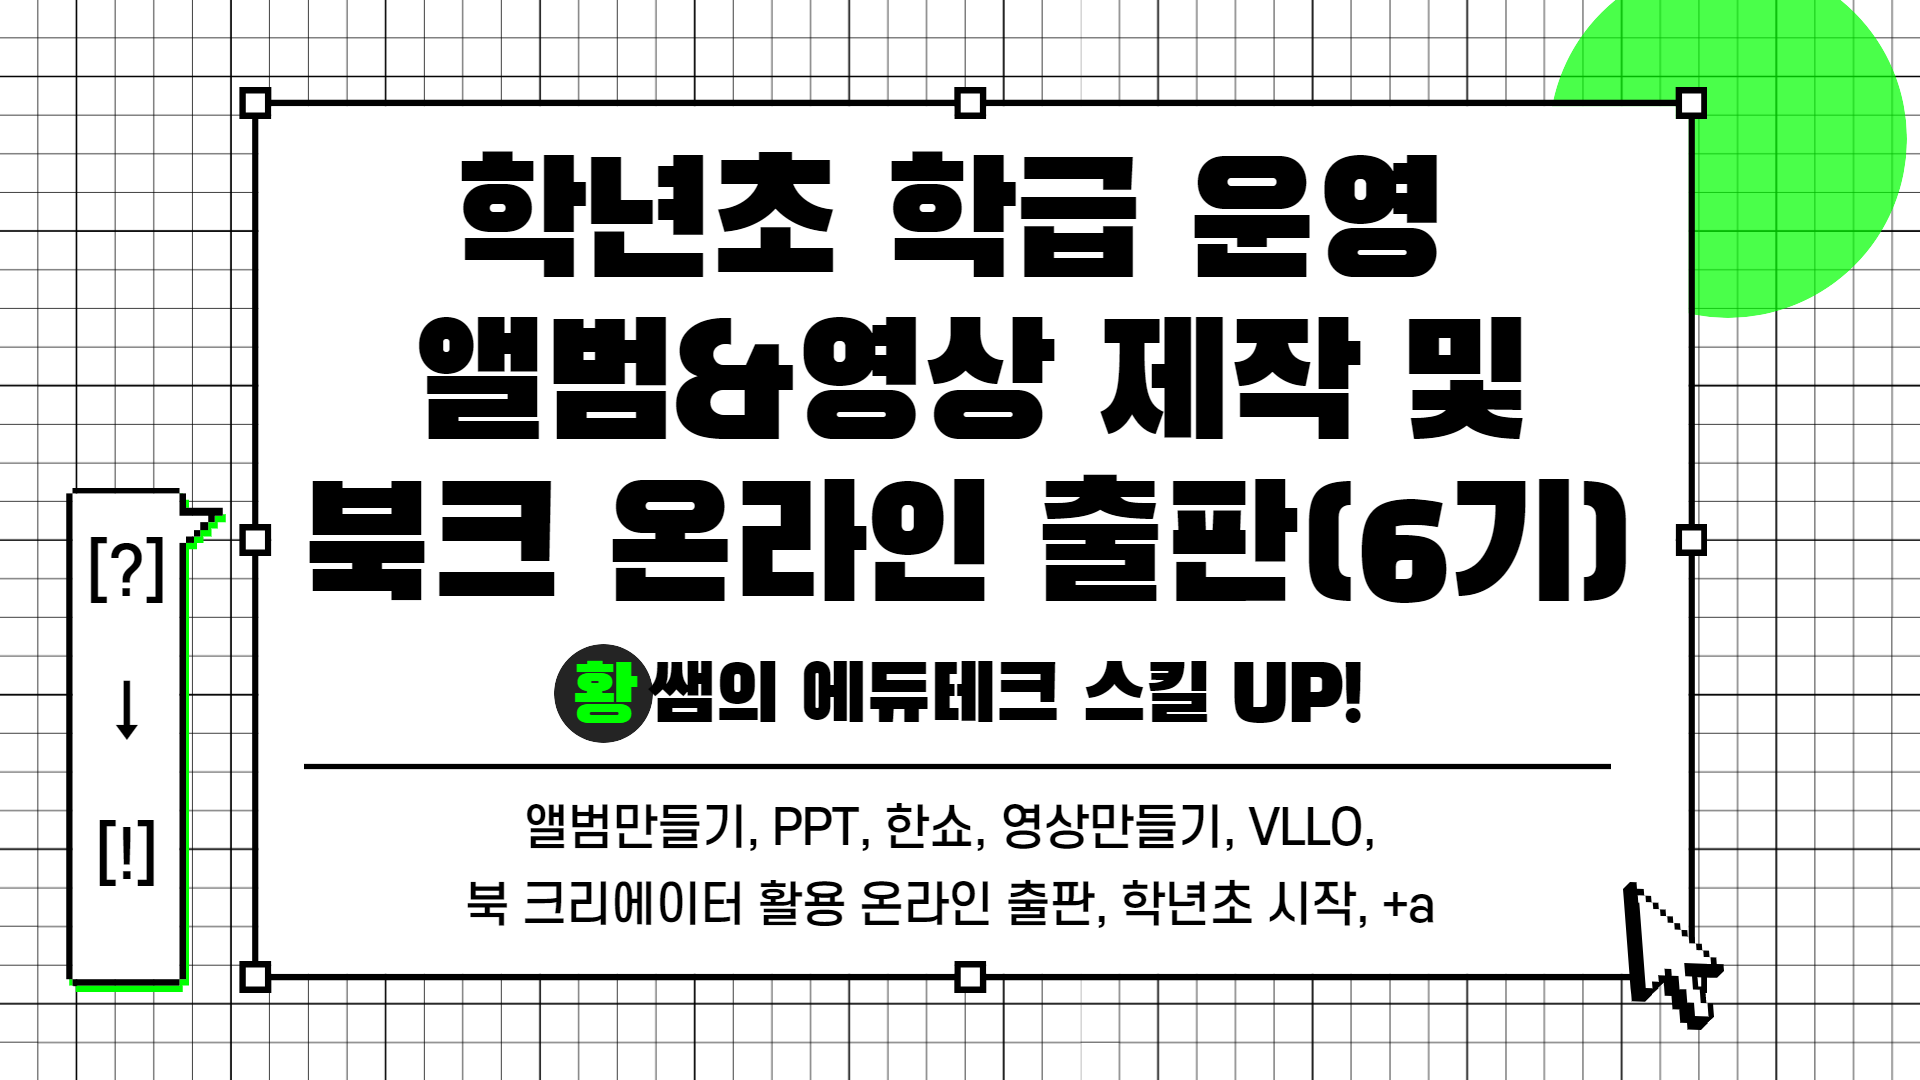 [?] → [!] 황쌤의 에듀테크 스킬 UP!(학급 운영 앨범&영상 제작 및 온라인 출판(6기))